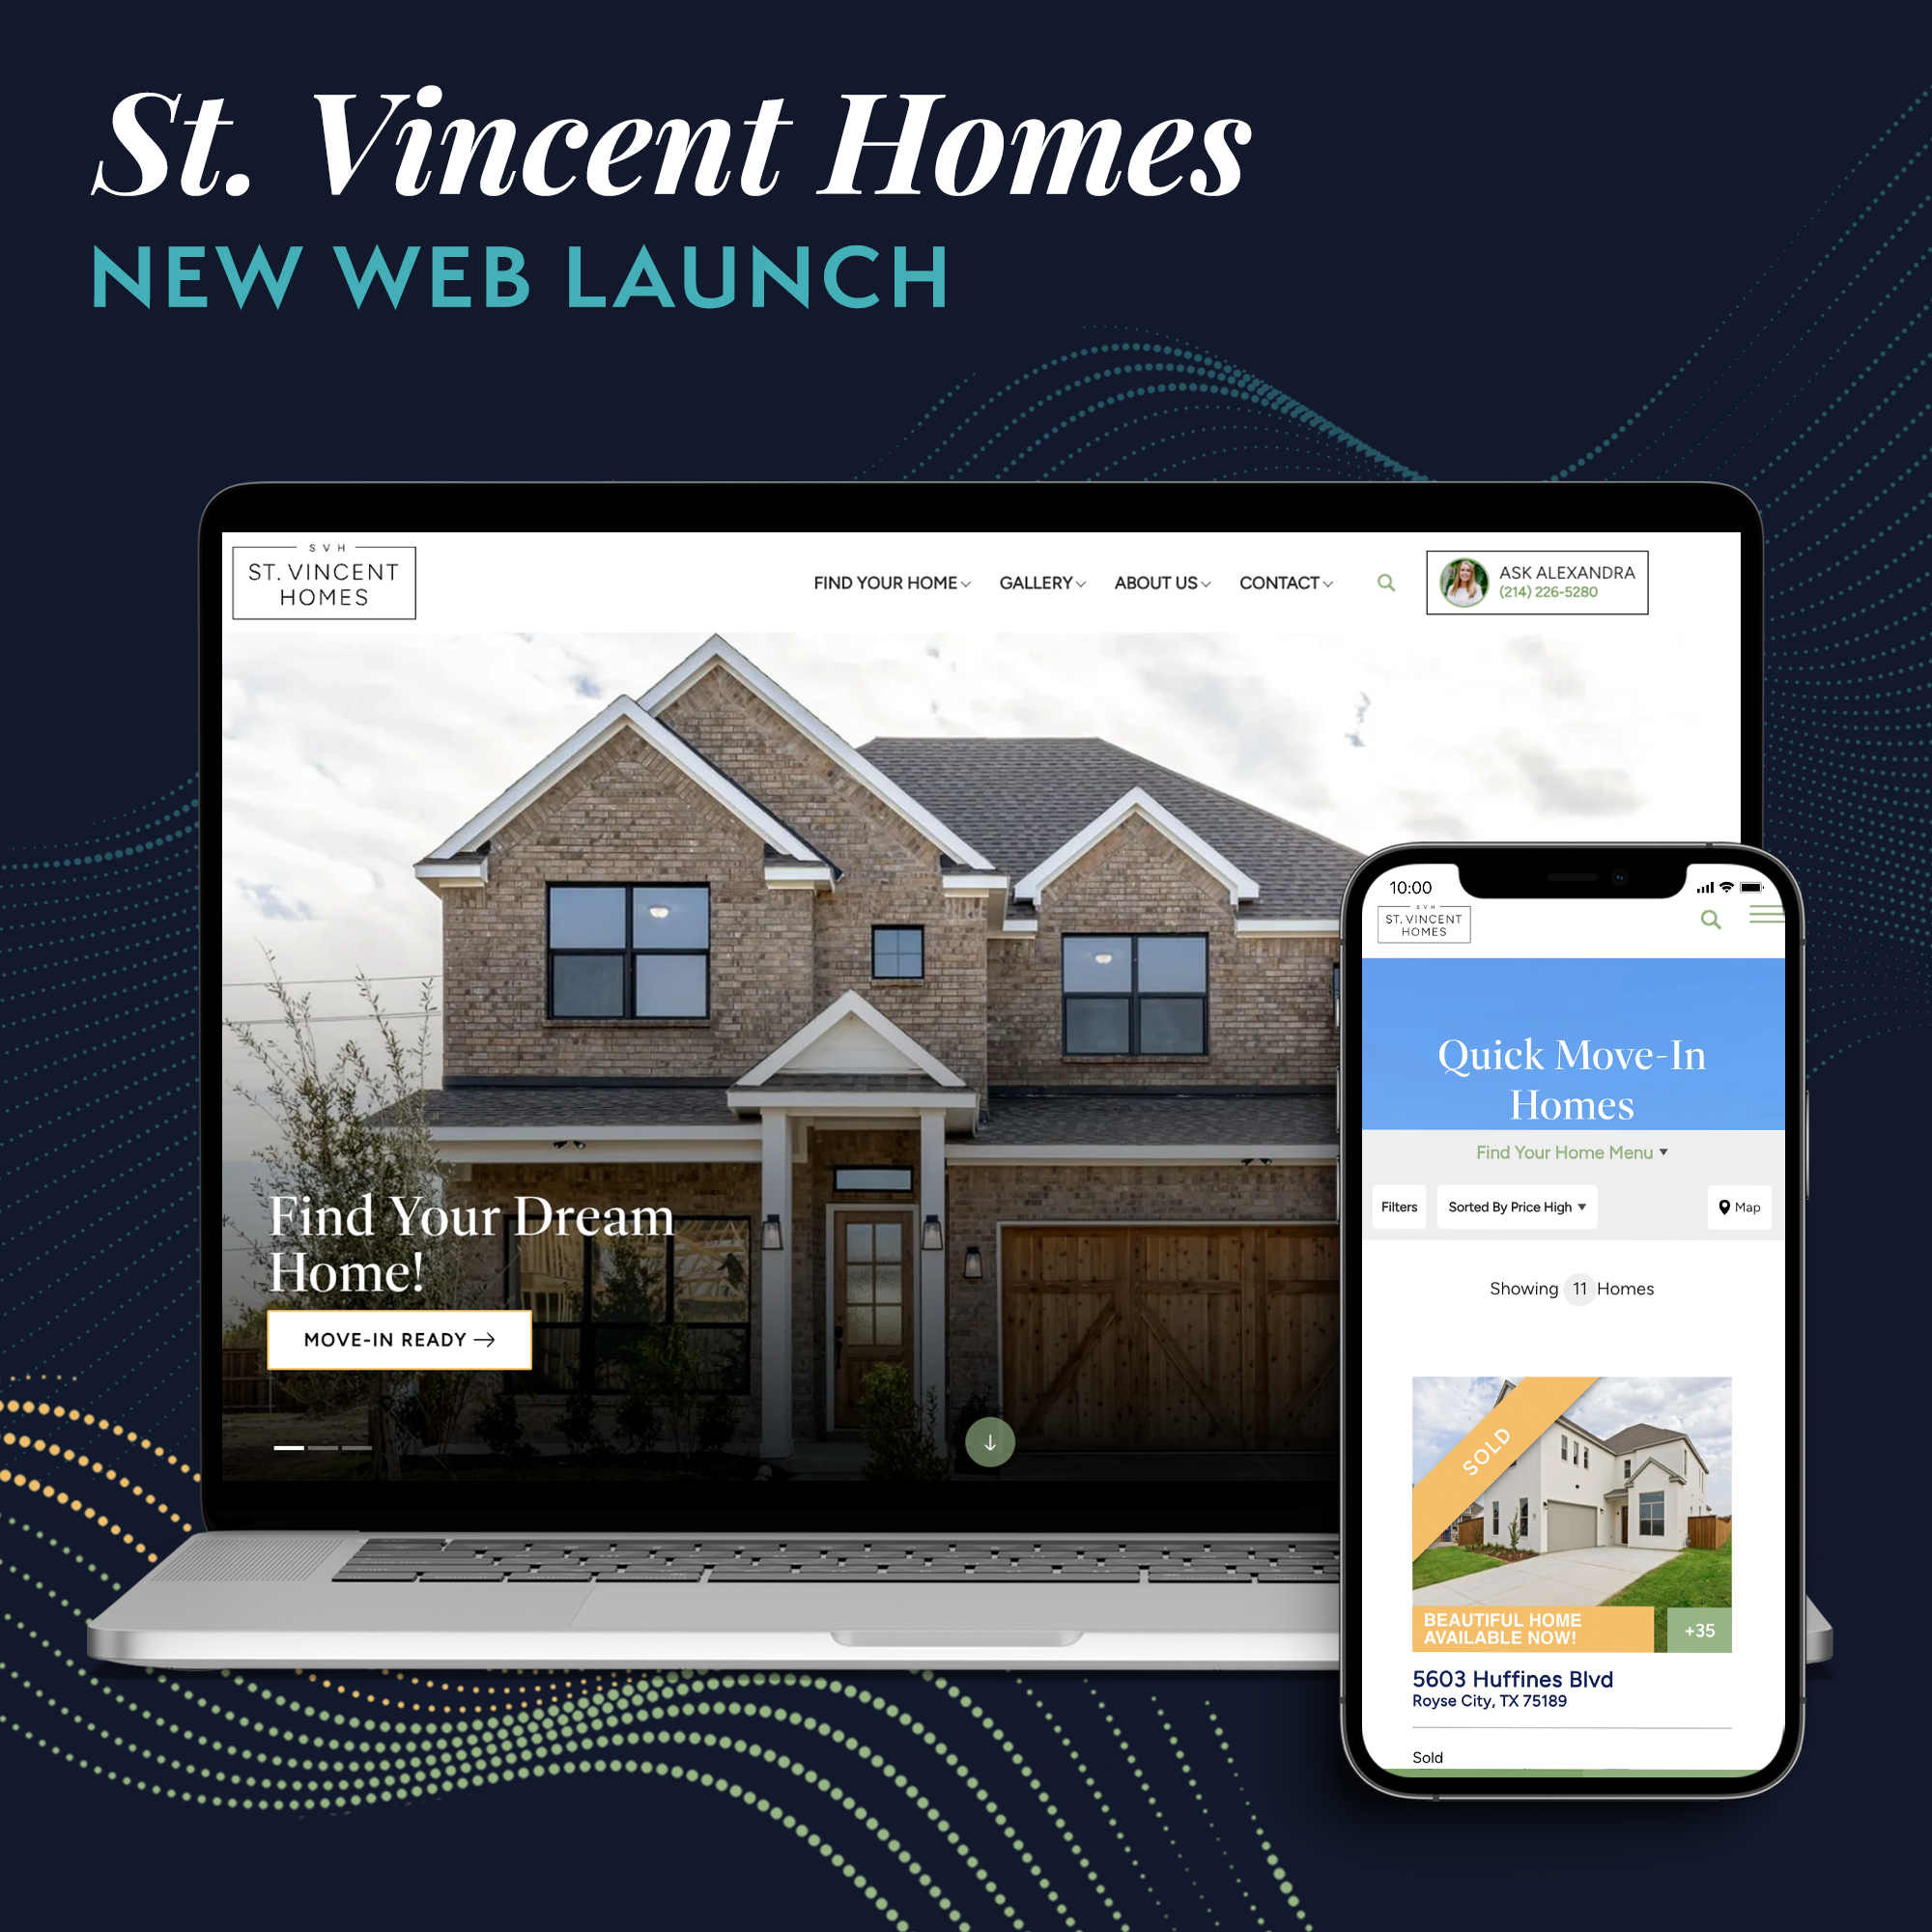 St. Vincent Homes website